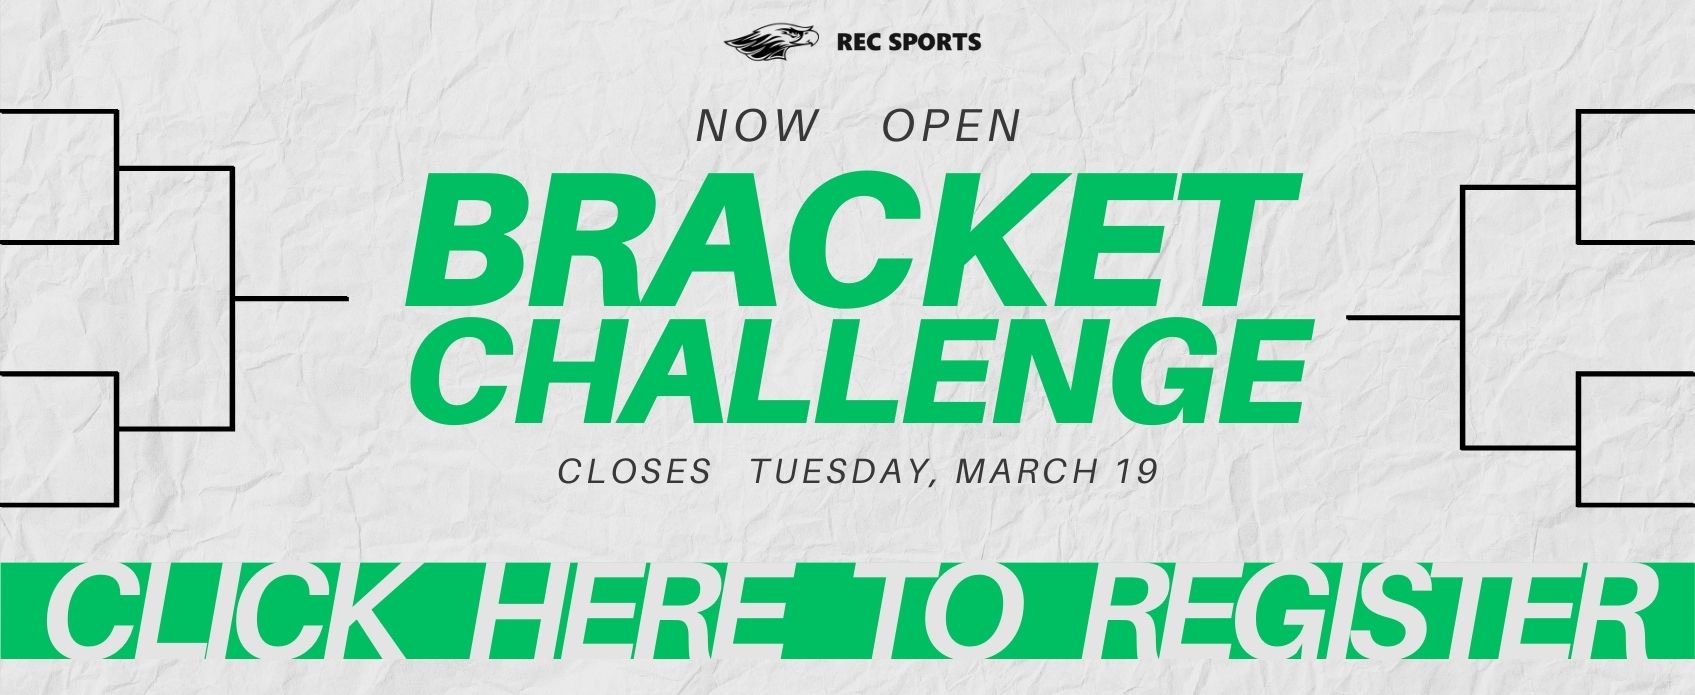 Register for Bracket Challenge